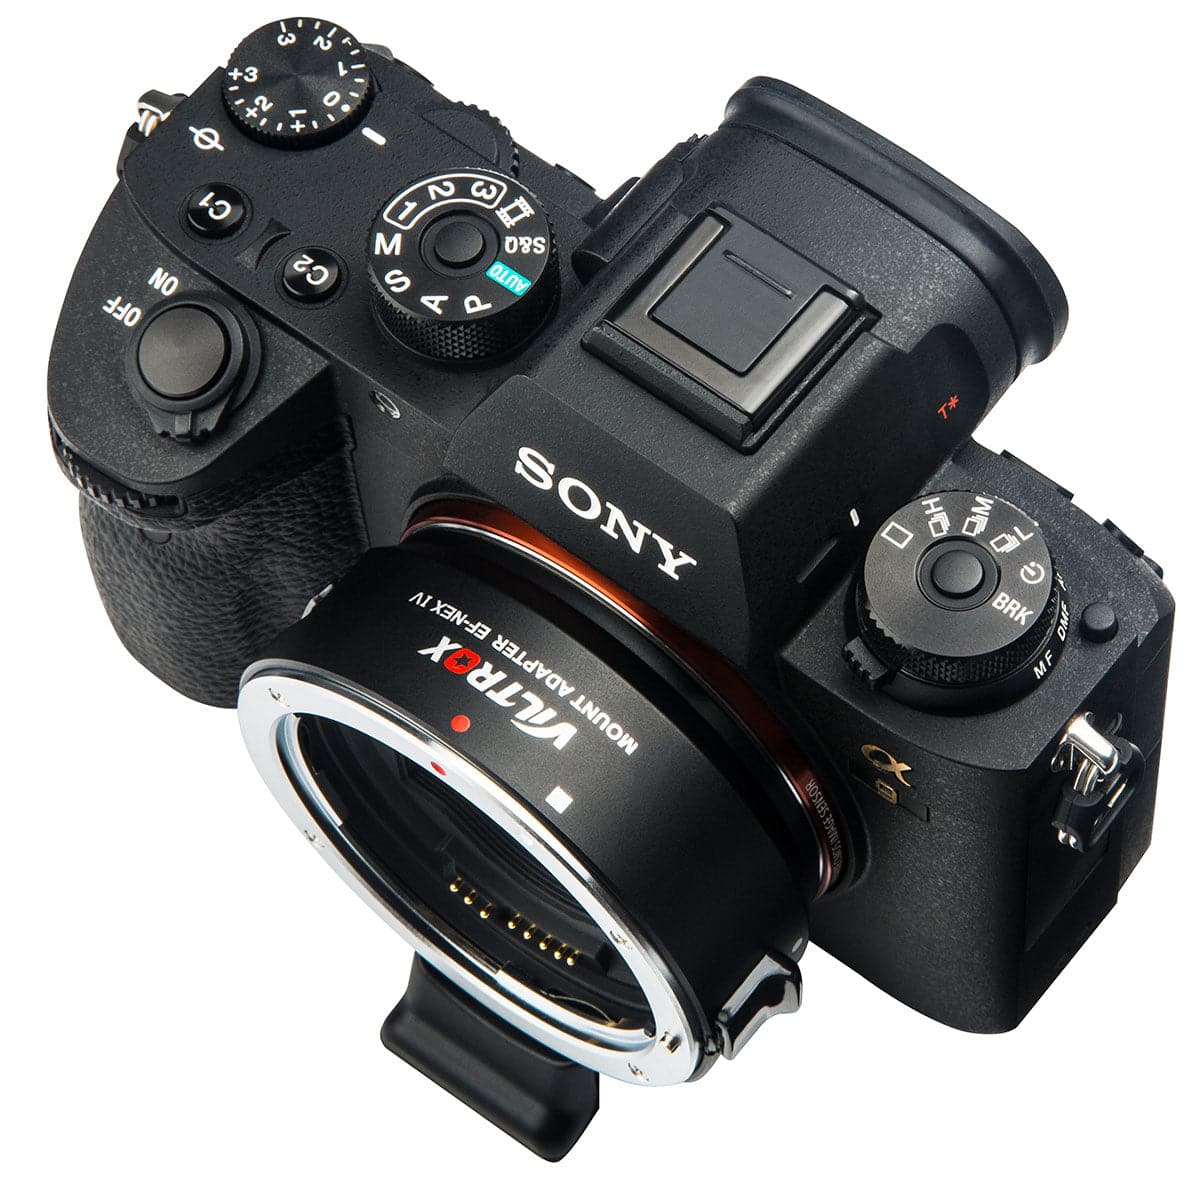 VILTROX EF-NEX IV High Electric Lens Mount Adapter Ring AF Auto Focus for Canon EF/EF-S Lens